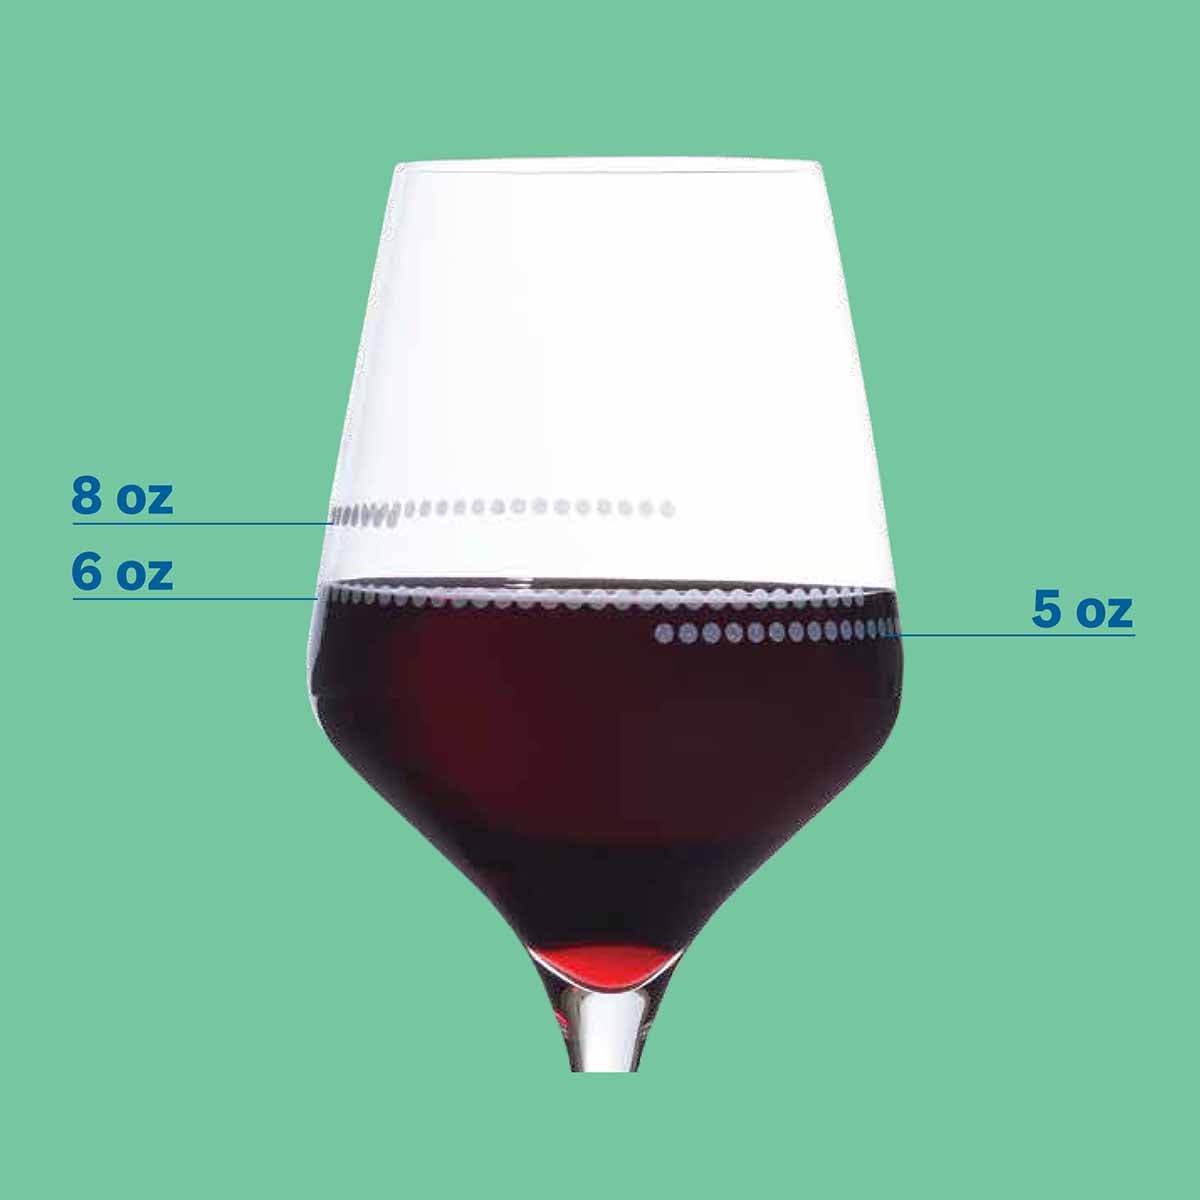 WW Portion Control Wine Glass Set - alternate view 2